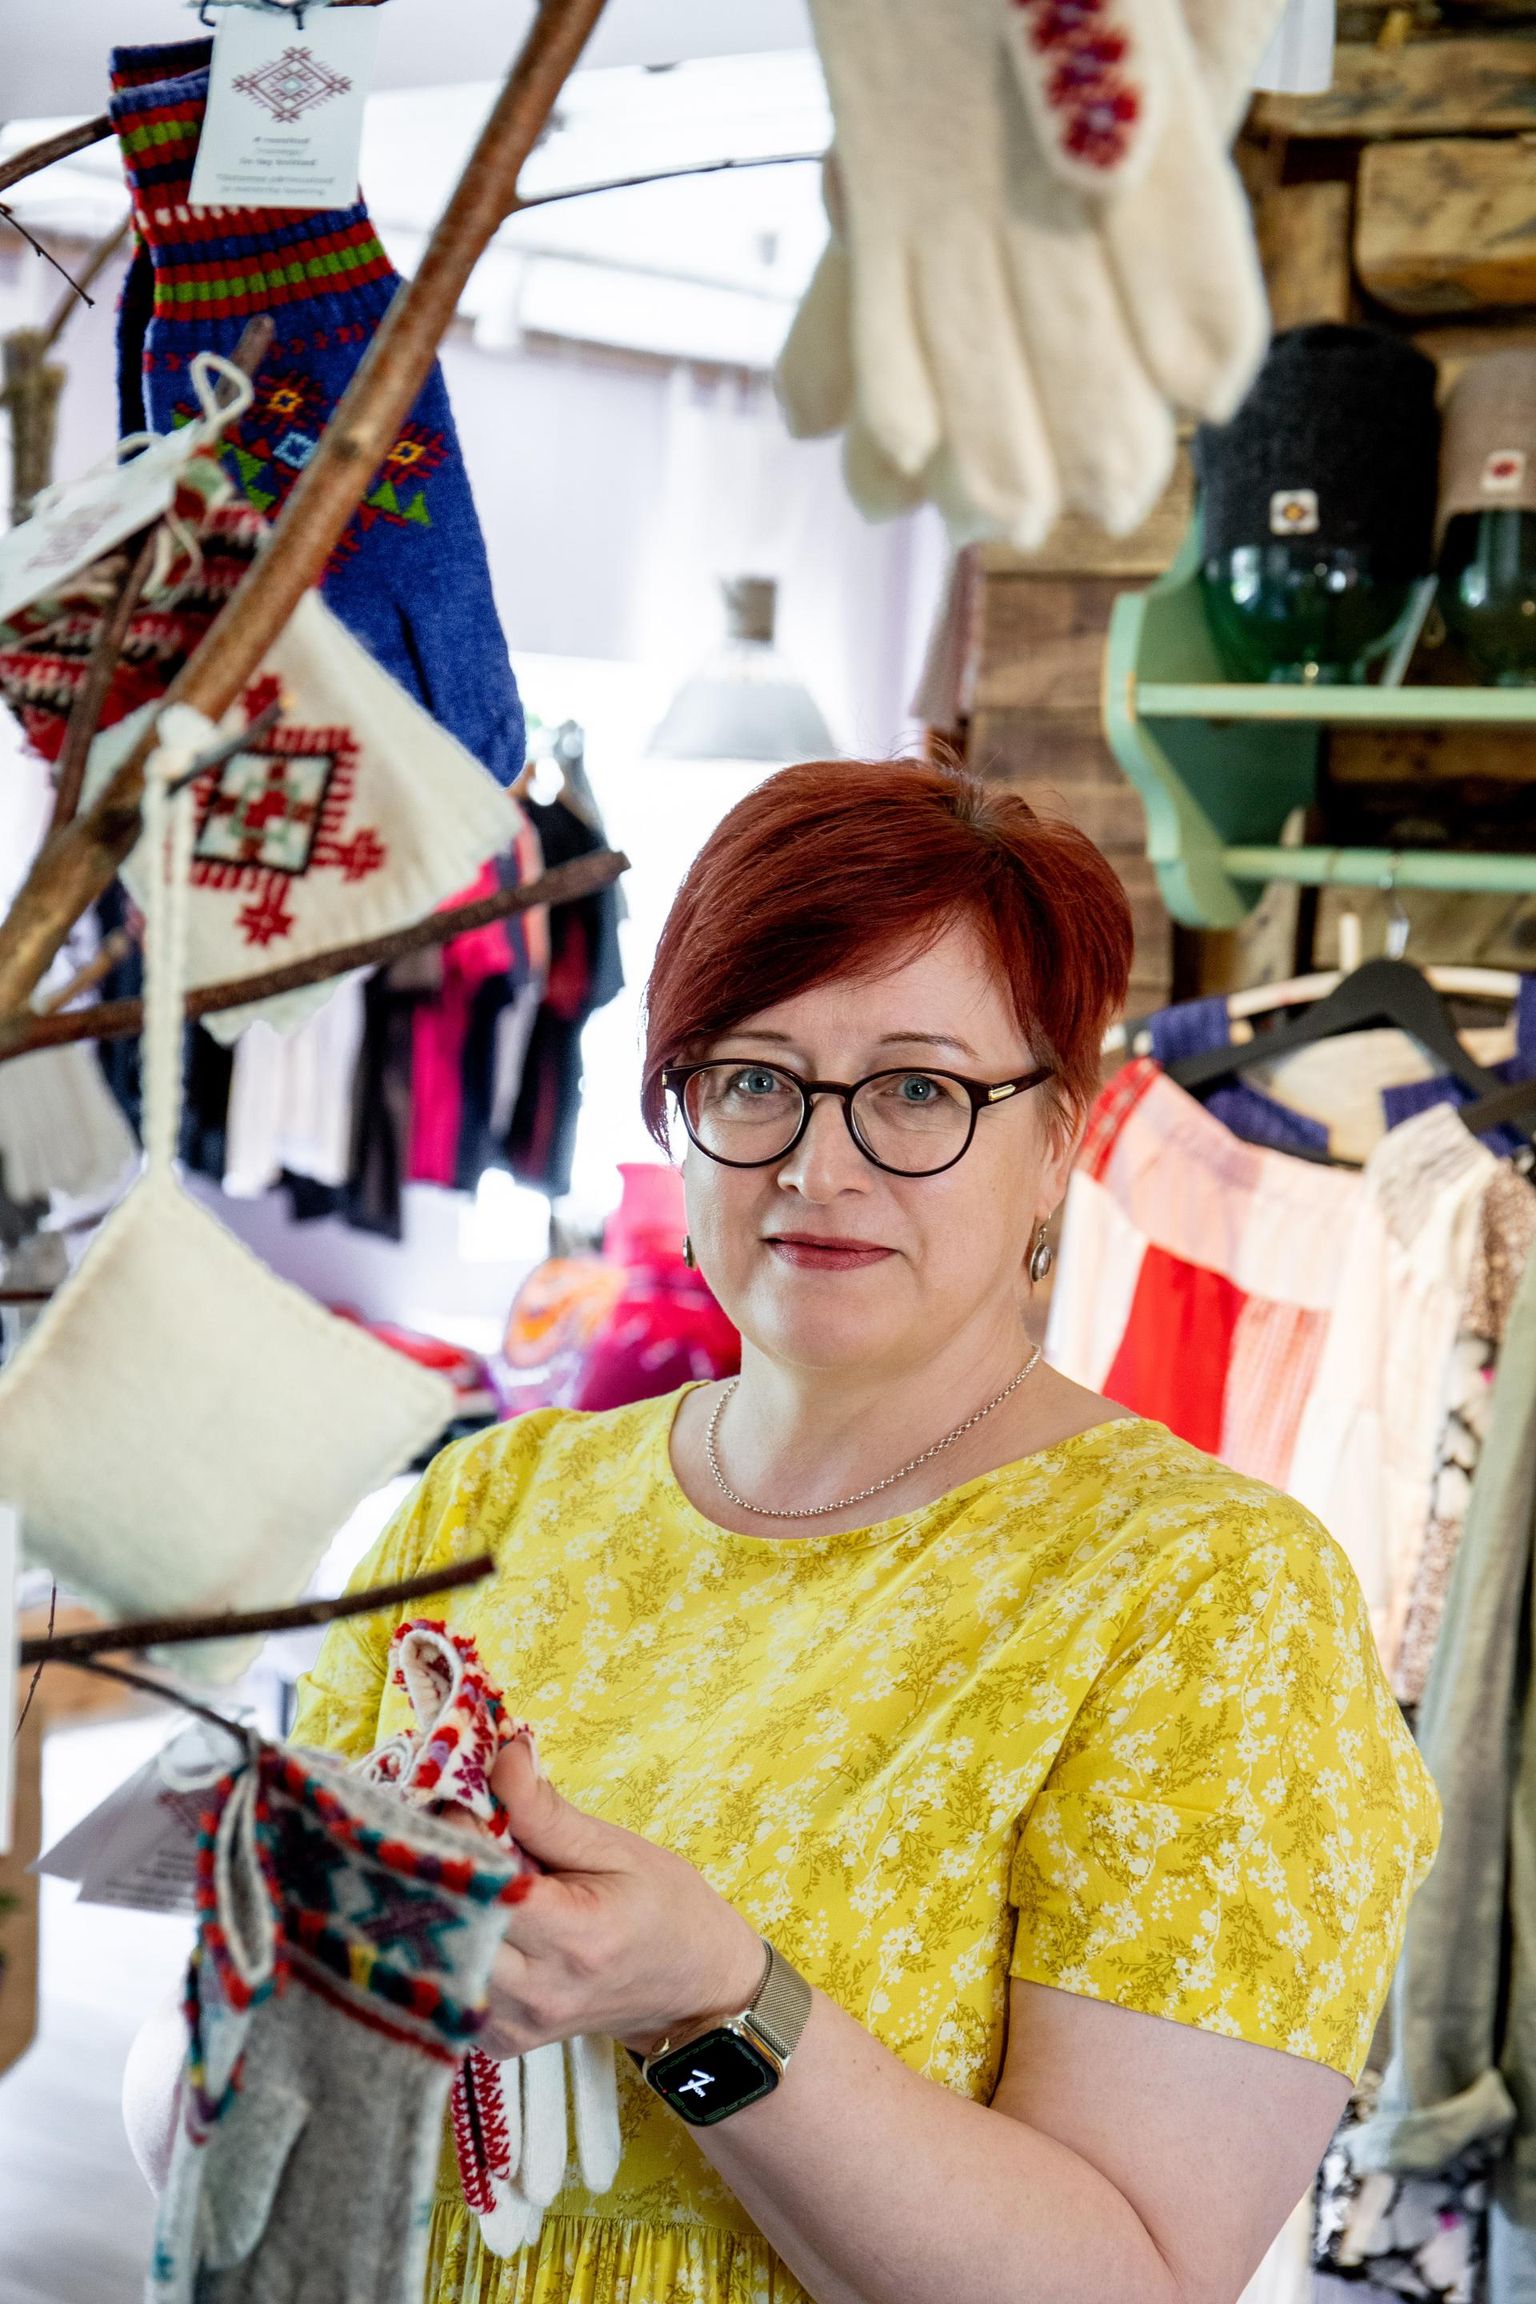 Roositud kindad on Tõstamaa kihelkonna eripära, mille kudumise kunsti Anu Randmaa taaselustab ja näitab valikut imelist näputööd, mis ripub käsitööpoes.